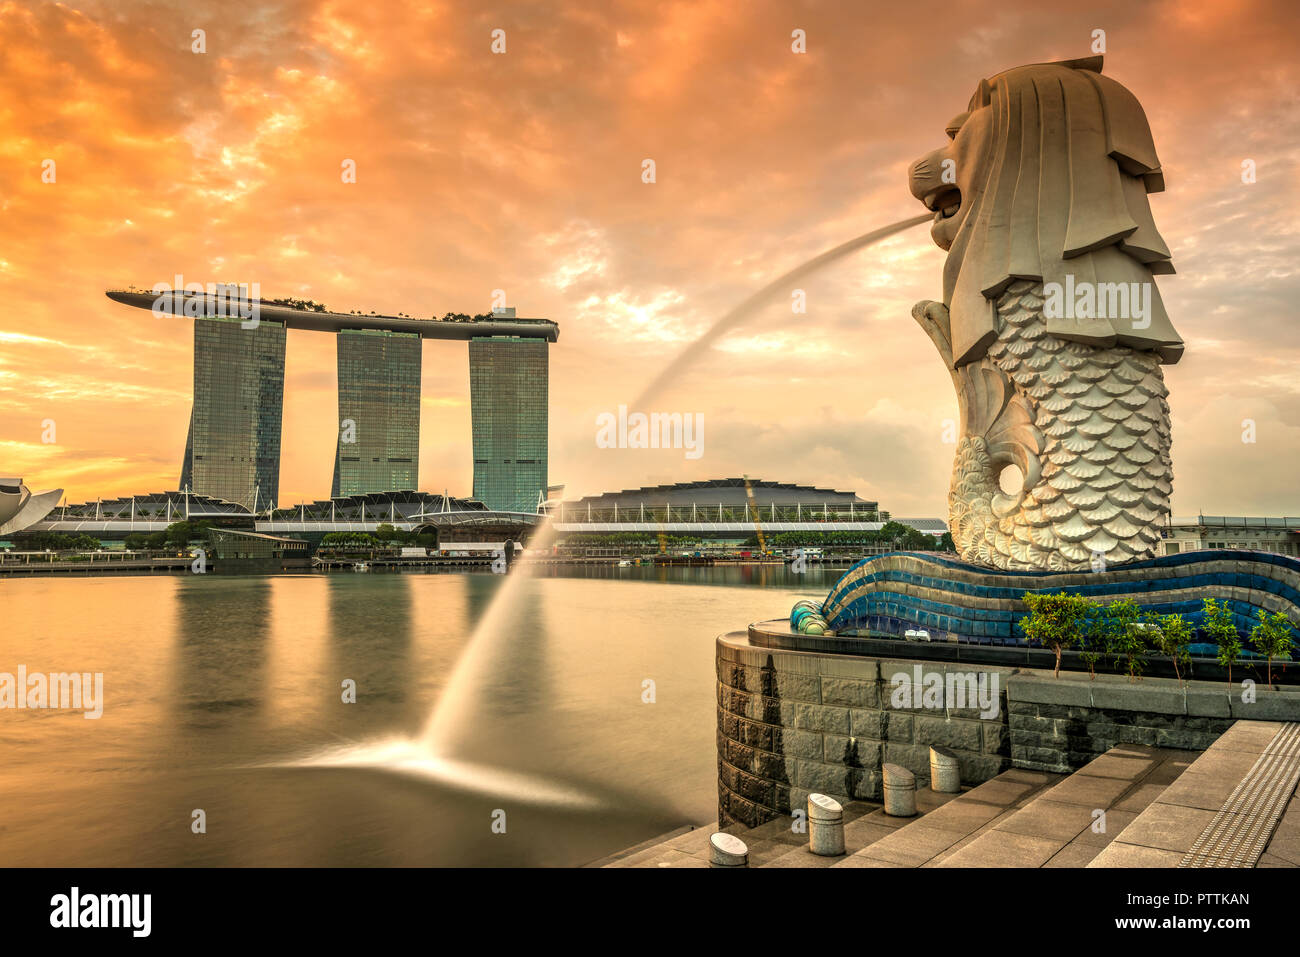 La statue du Merlion avec Marina Bay Sands dans l'arrière-plan, Singapour Banque D'Images